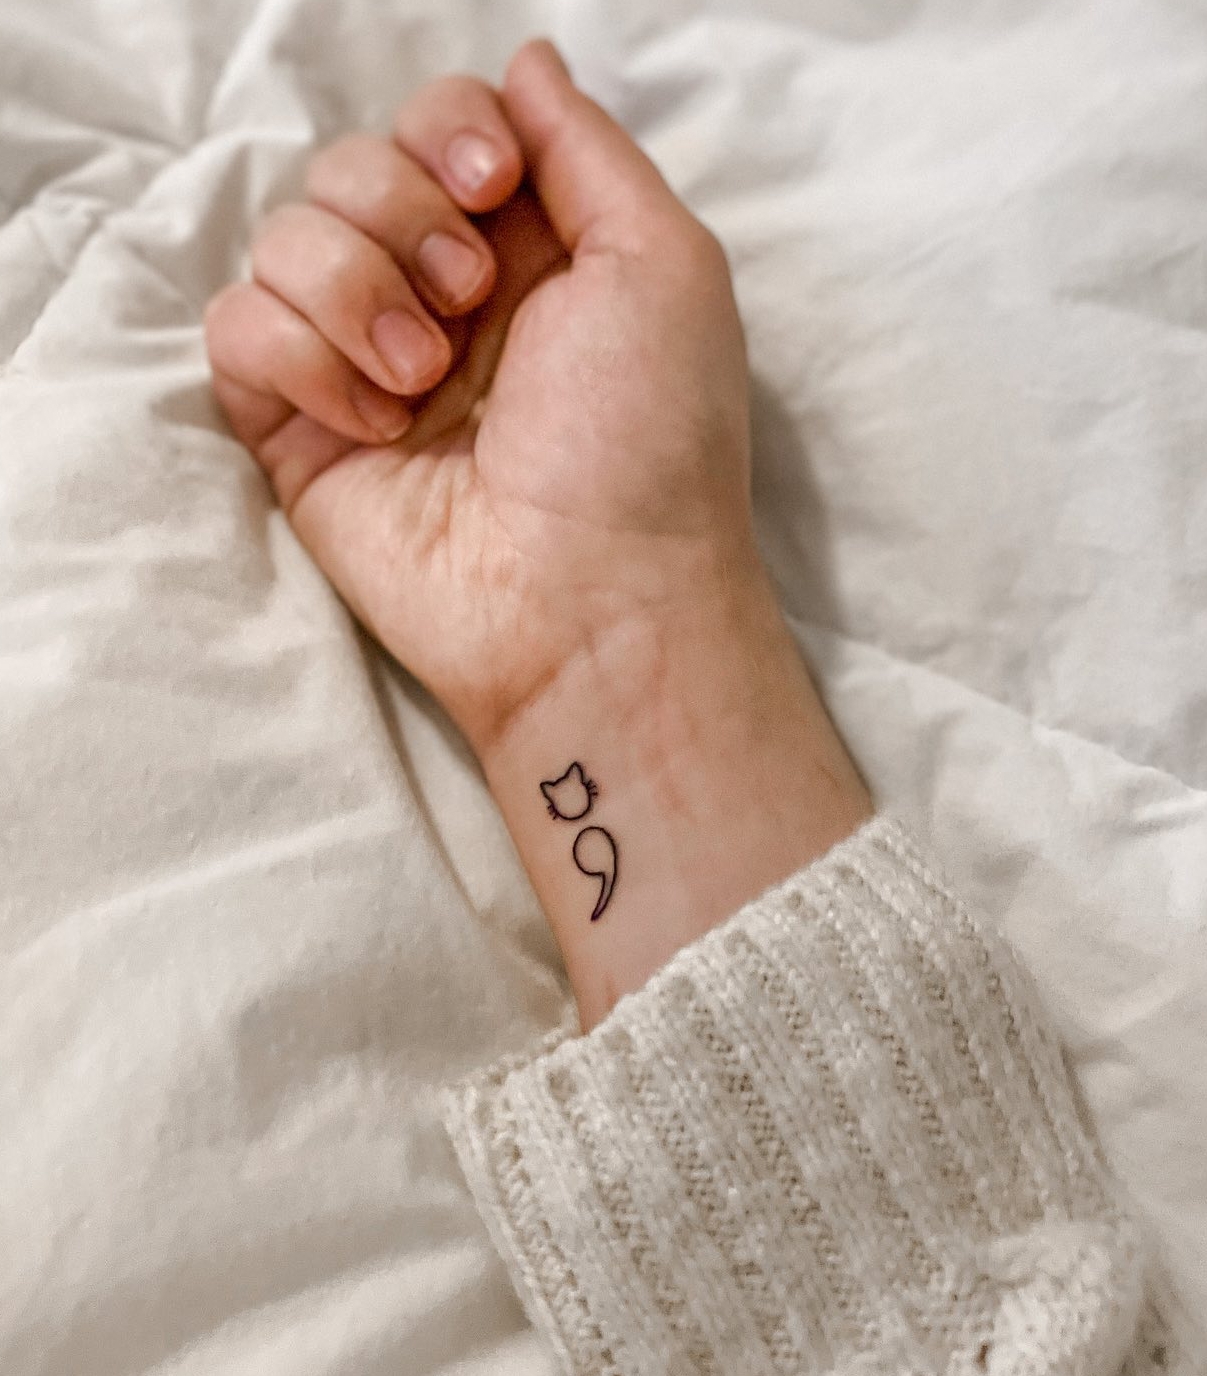 Cat Semicolon Tattoo on Wrist